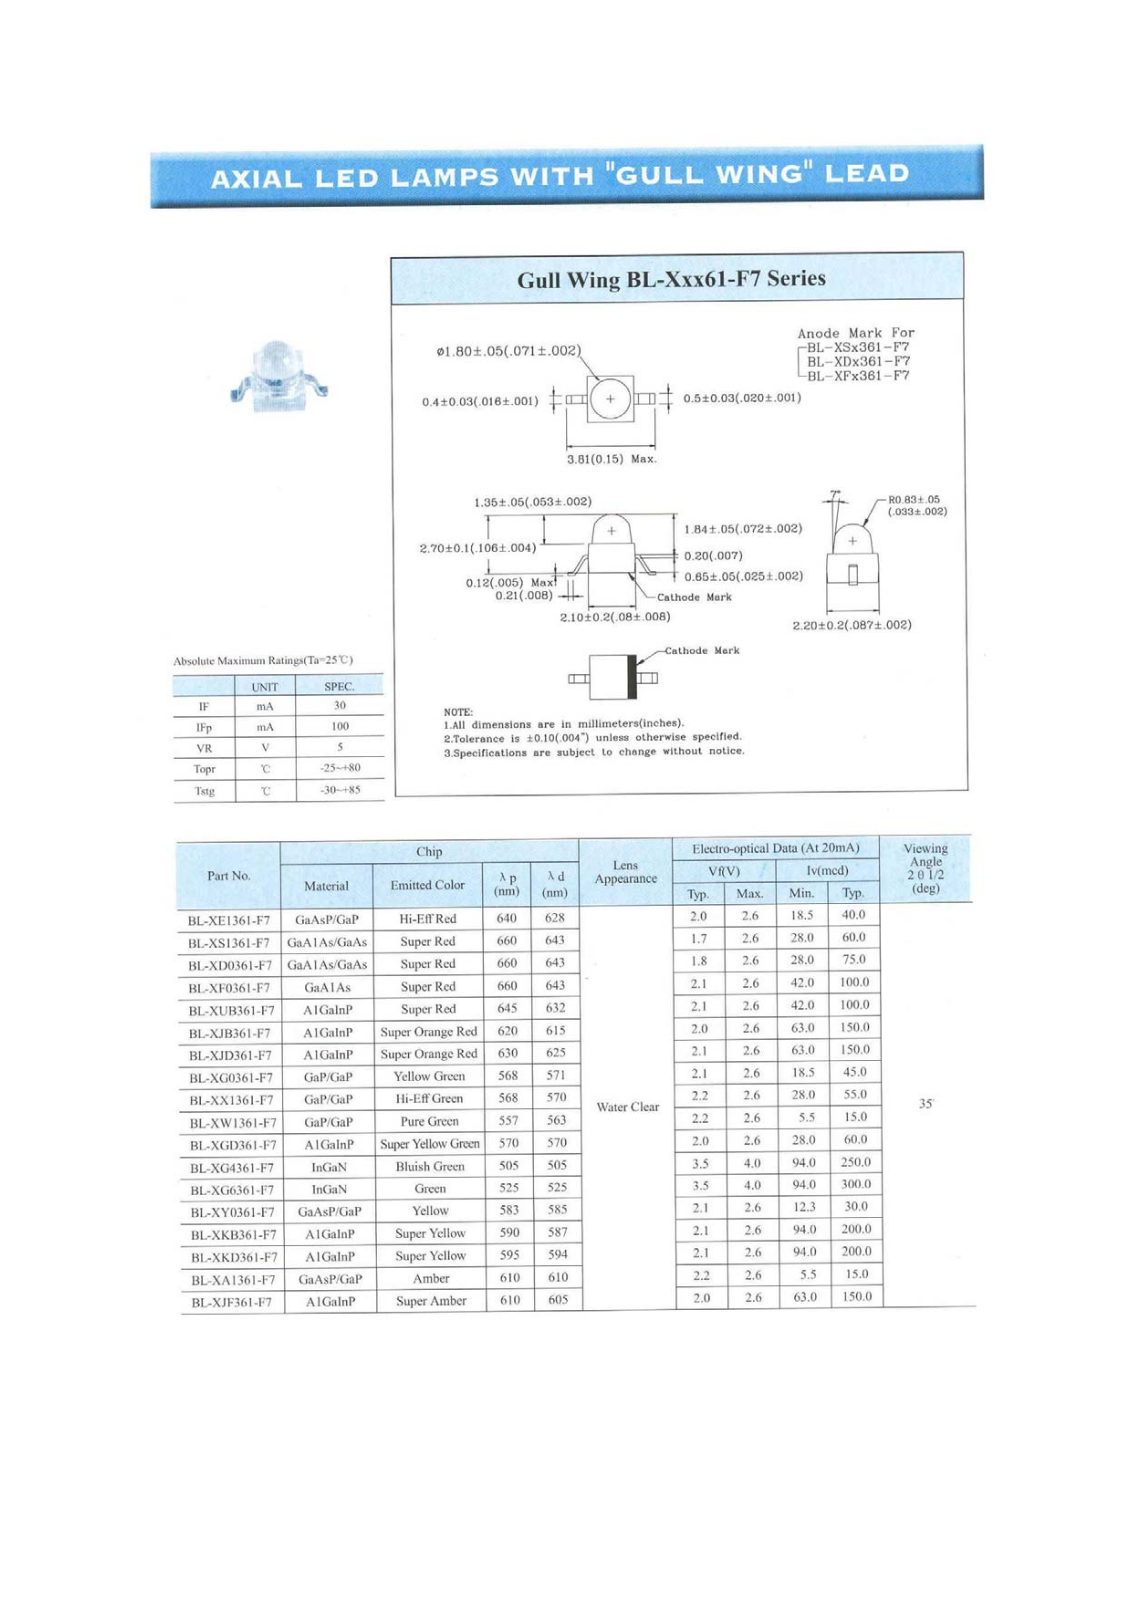 YELLOW STONE CORP BL-XW1361-F7, BL-XUB361-F7, BL-XY0361-F7, BL-XX1361-F7, BL-XG6361-F7 Datasheet